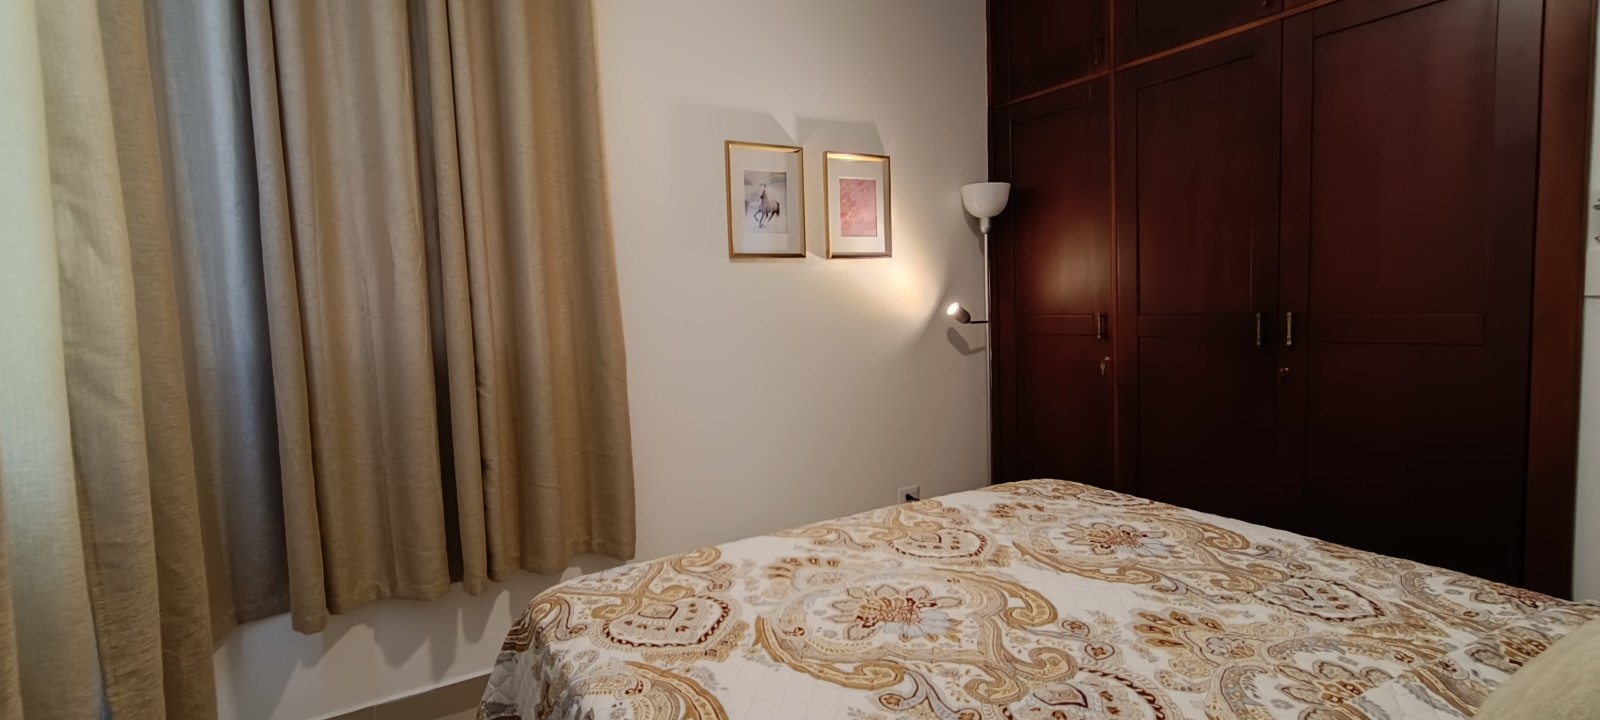 apartamentos - Vendo 4to piso Amueblado para inversión airbnb en el despertar 3